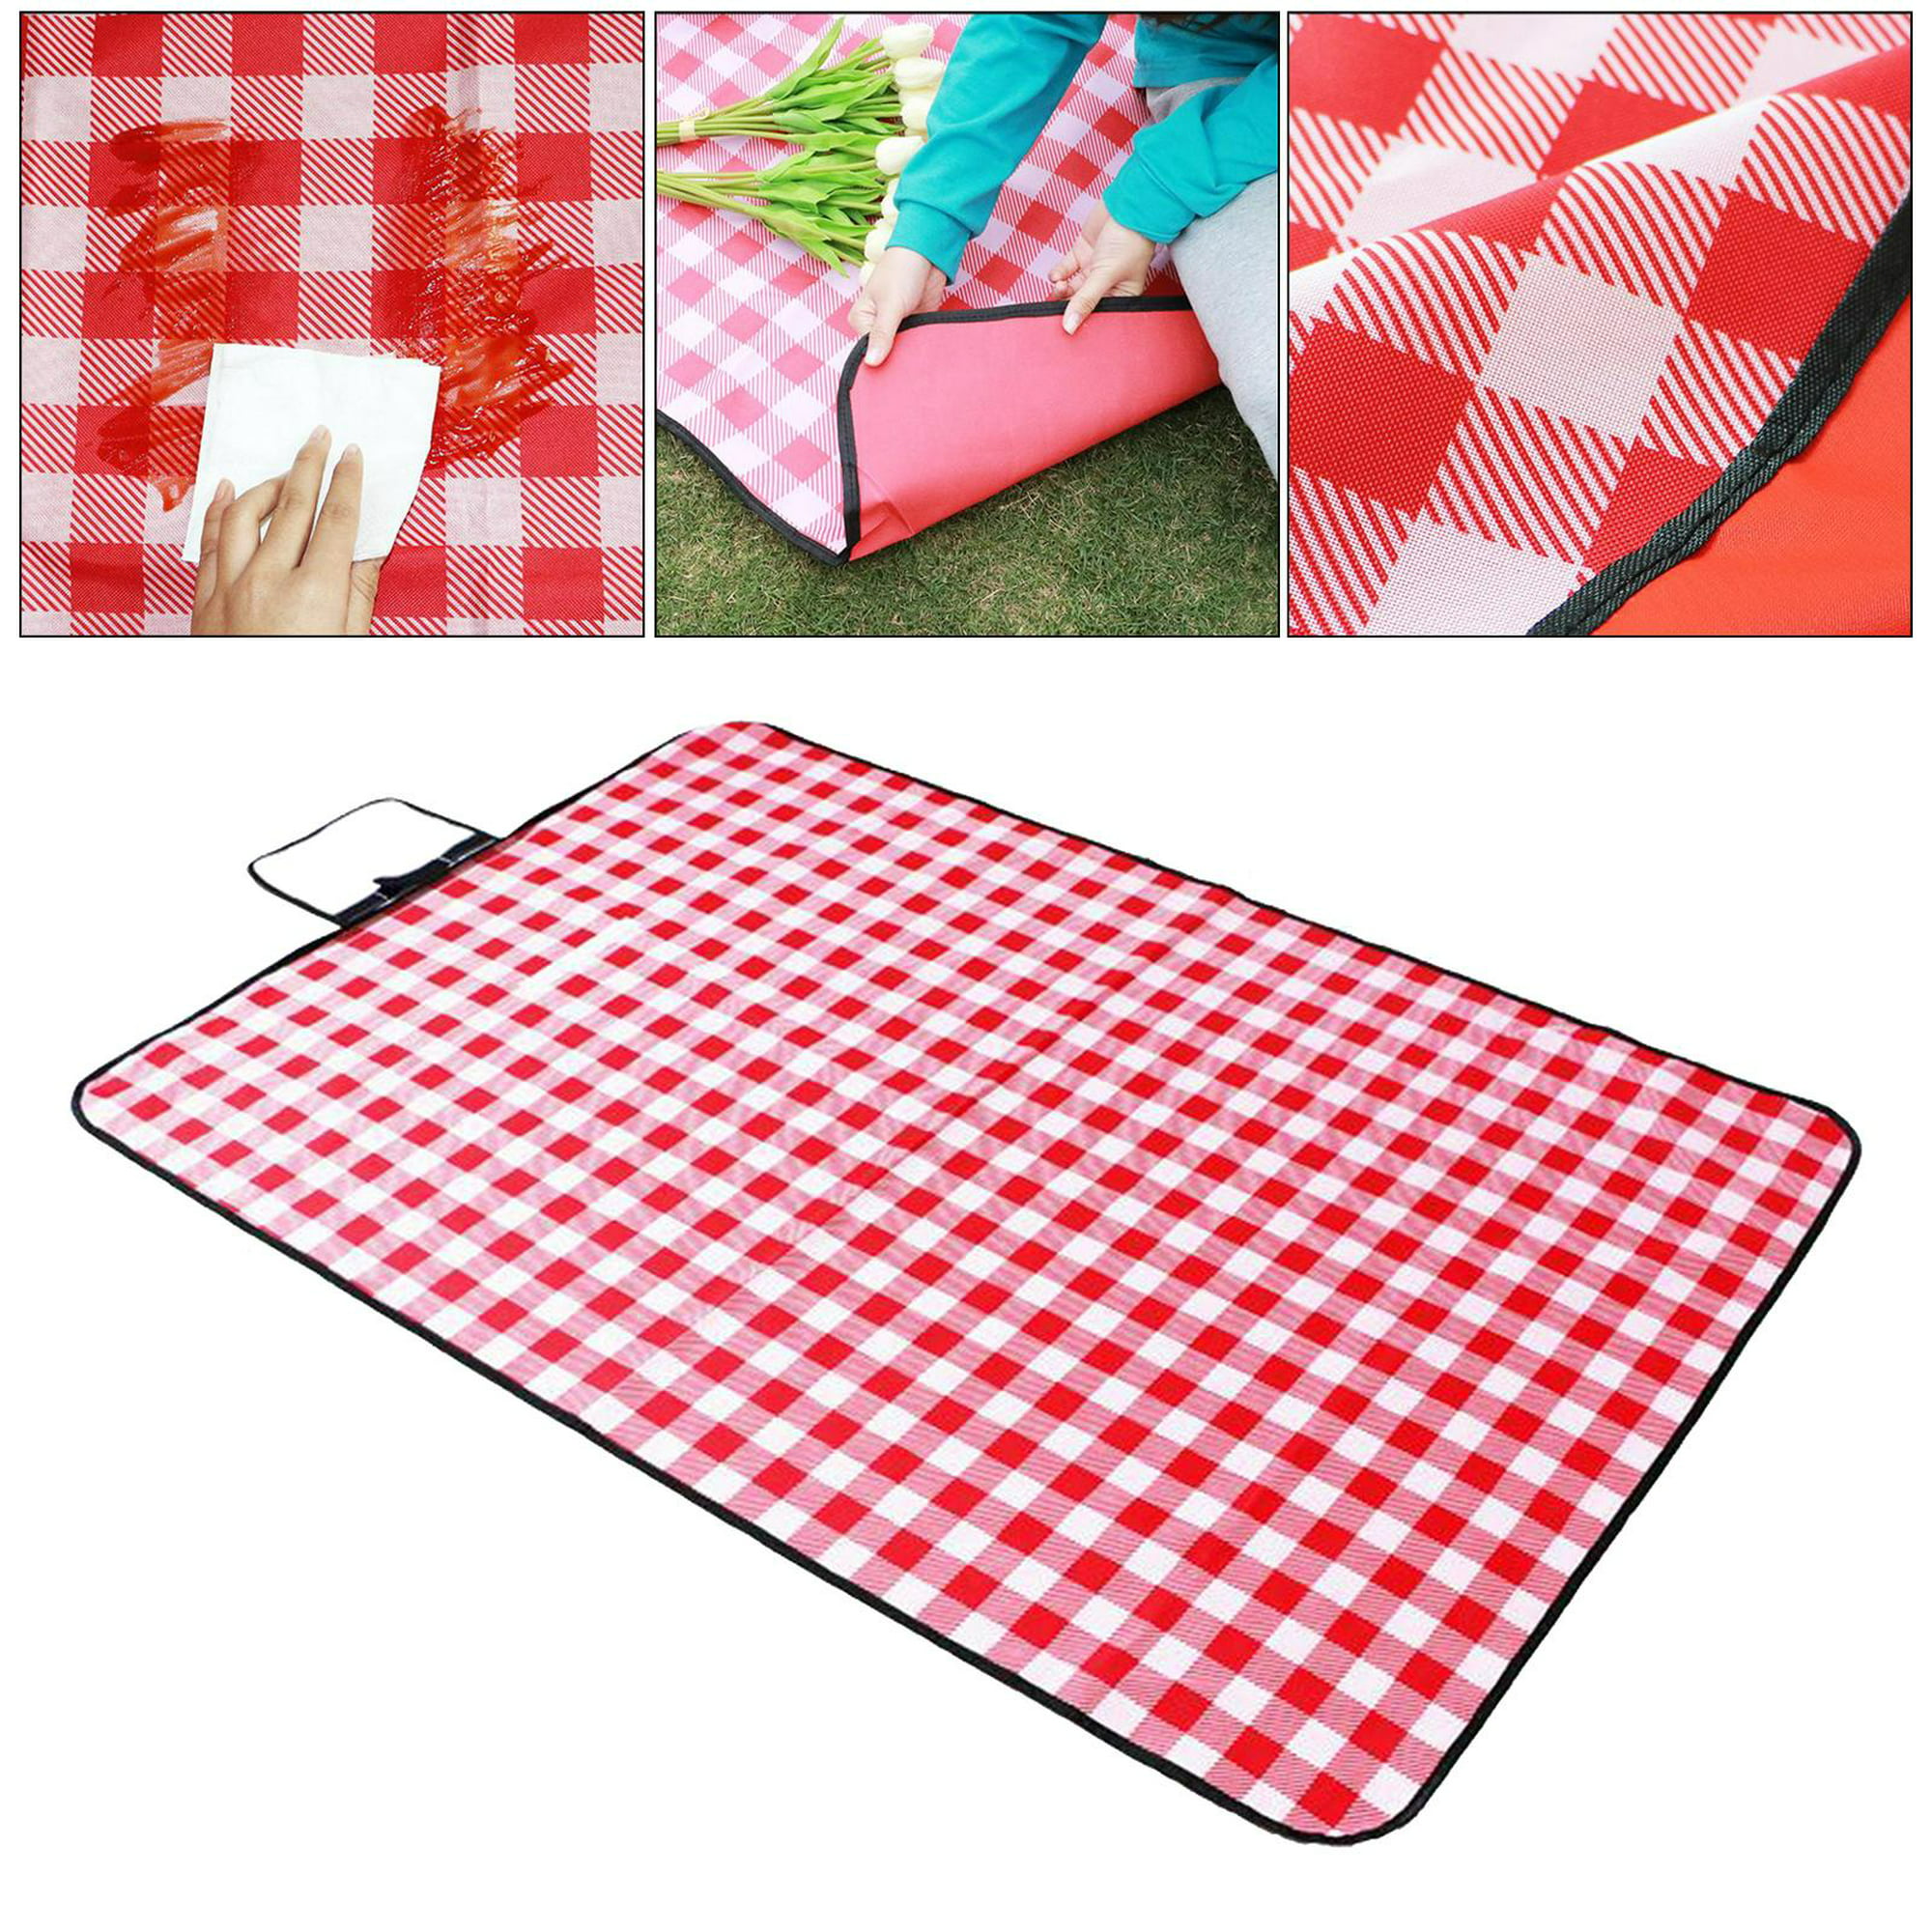 Manta de picnic impermeable y plegable con manteles individuales a juego, ELEOJOTA00